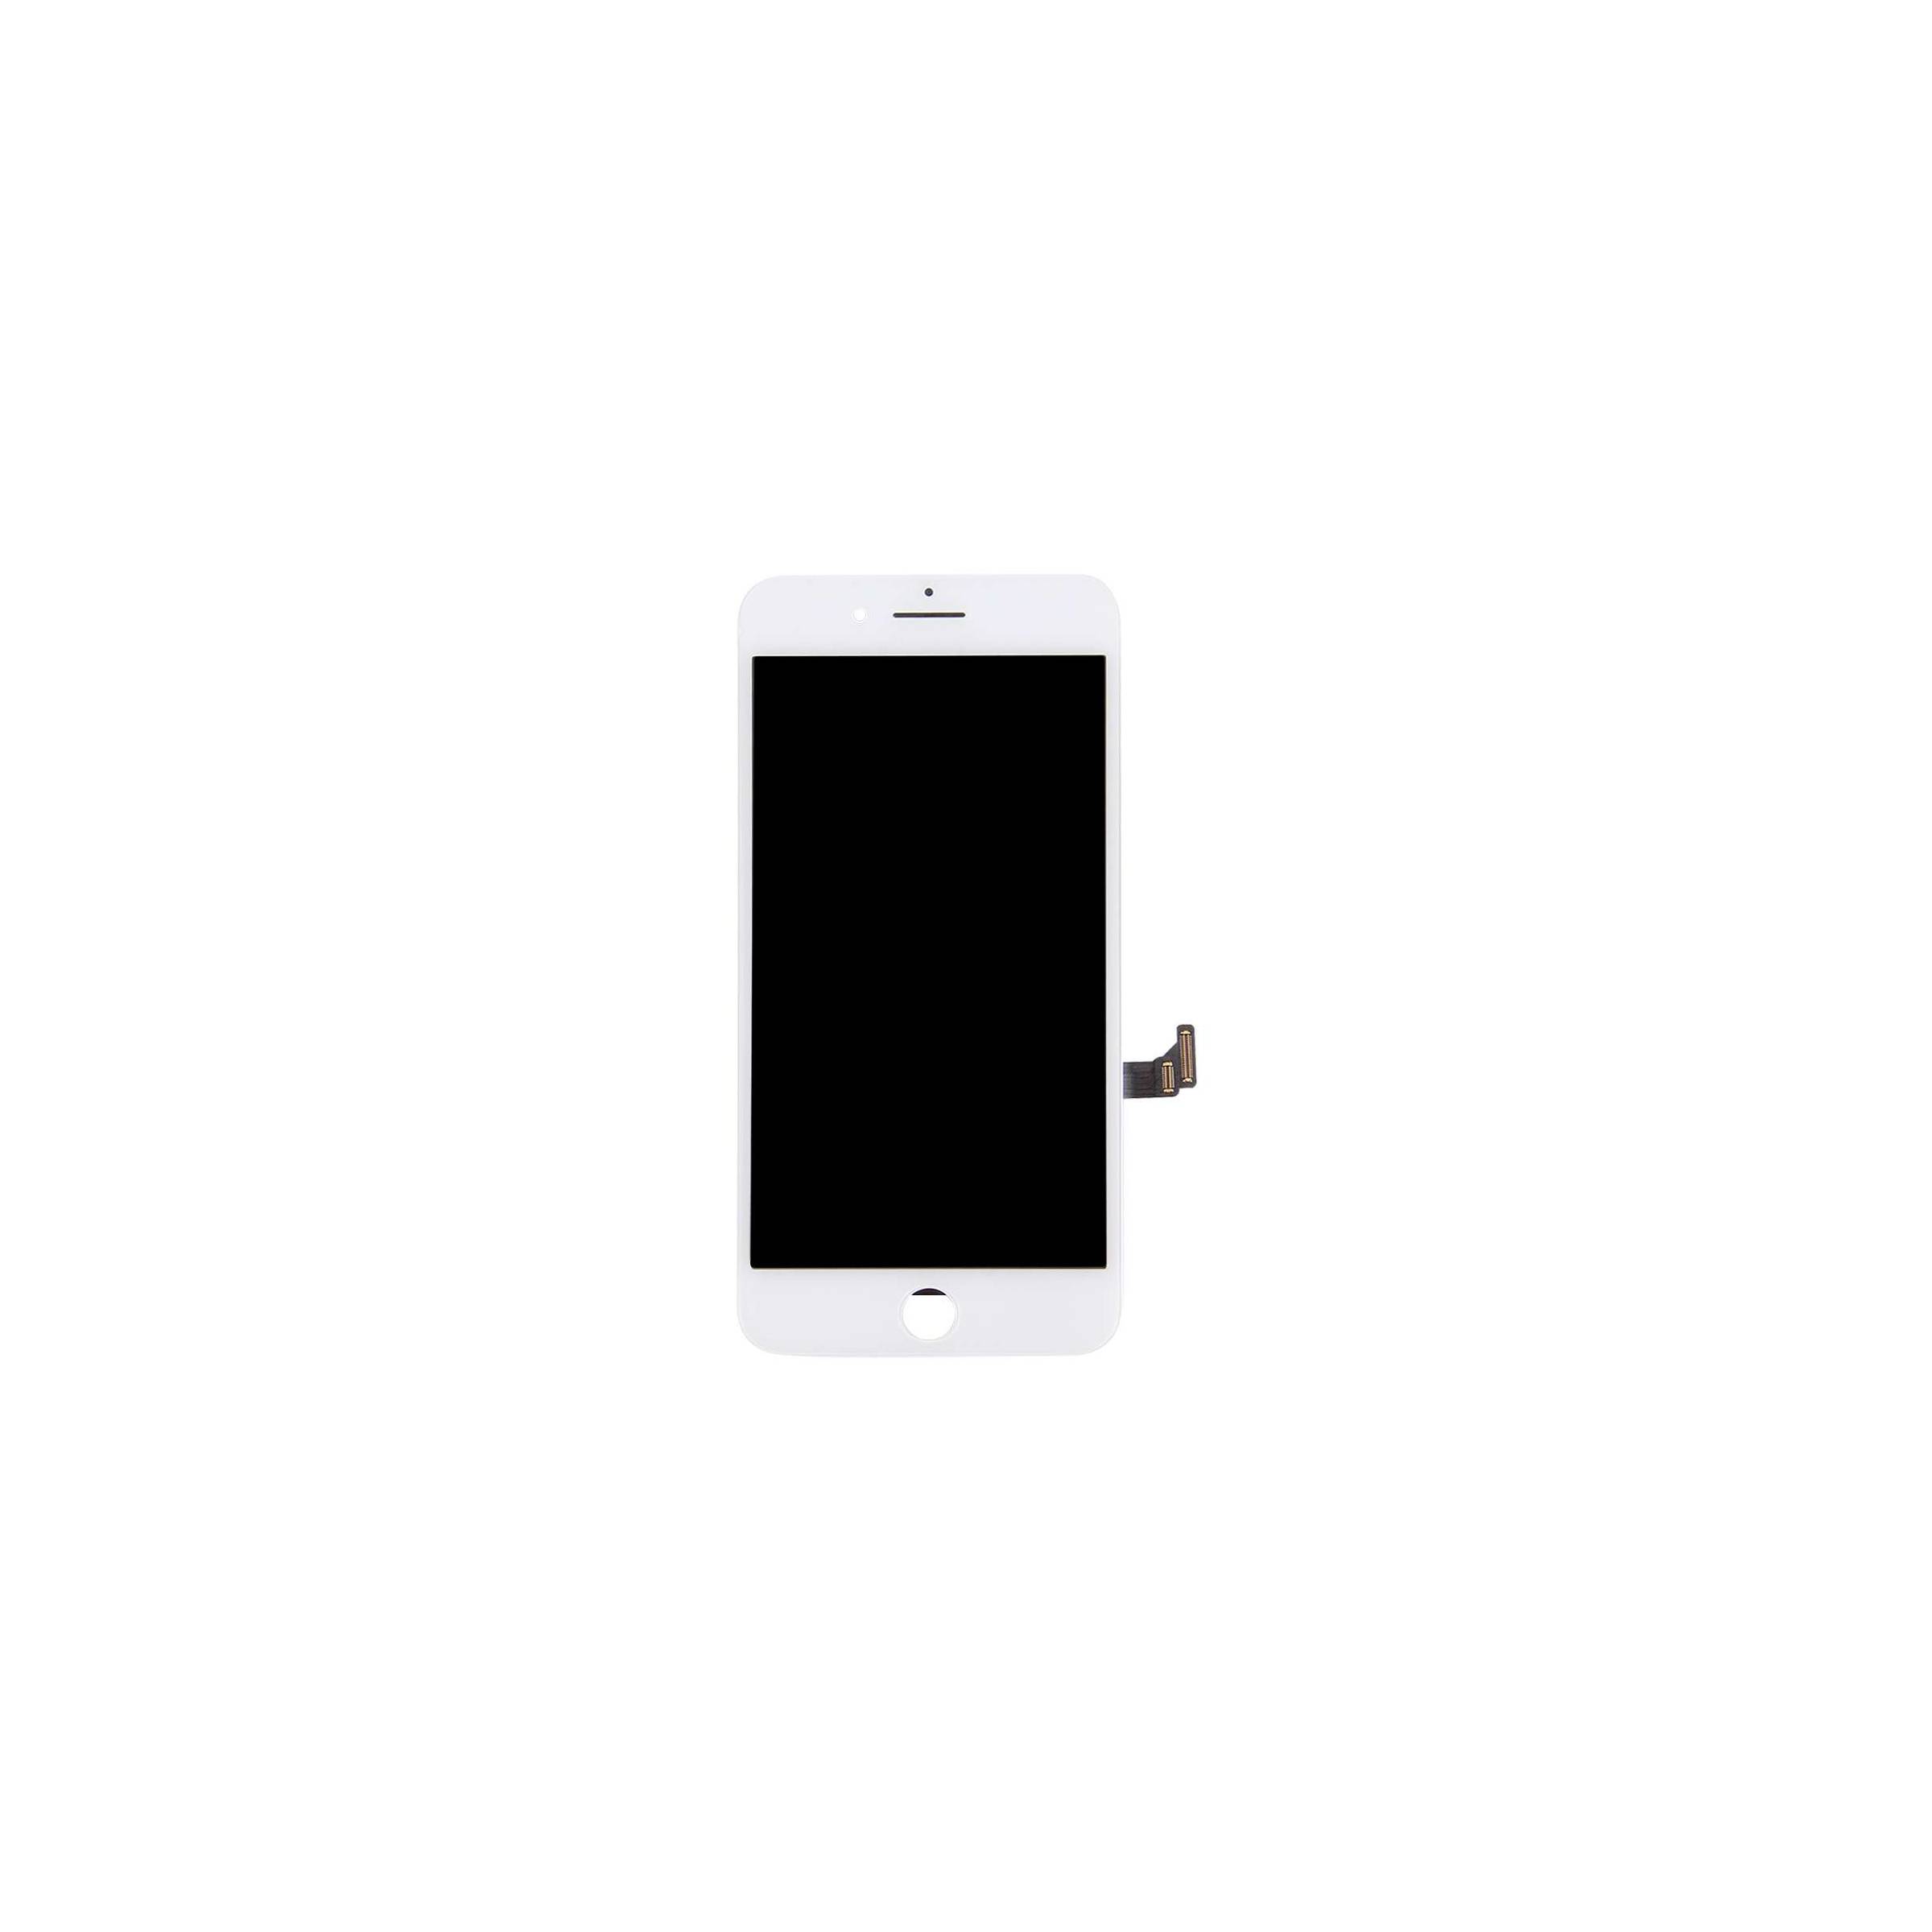 Bilde av Iphone 7 Pluss Høykvalitets Skjerm, Farge Hvit